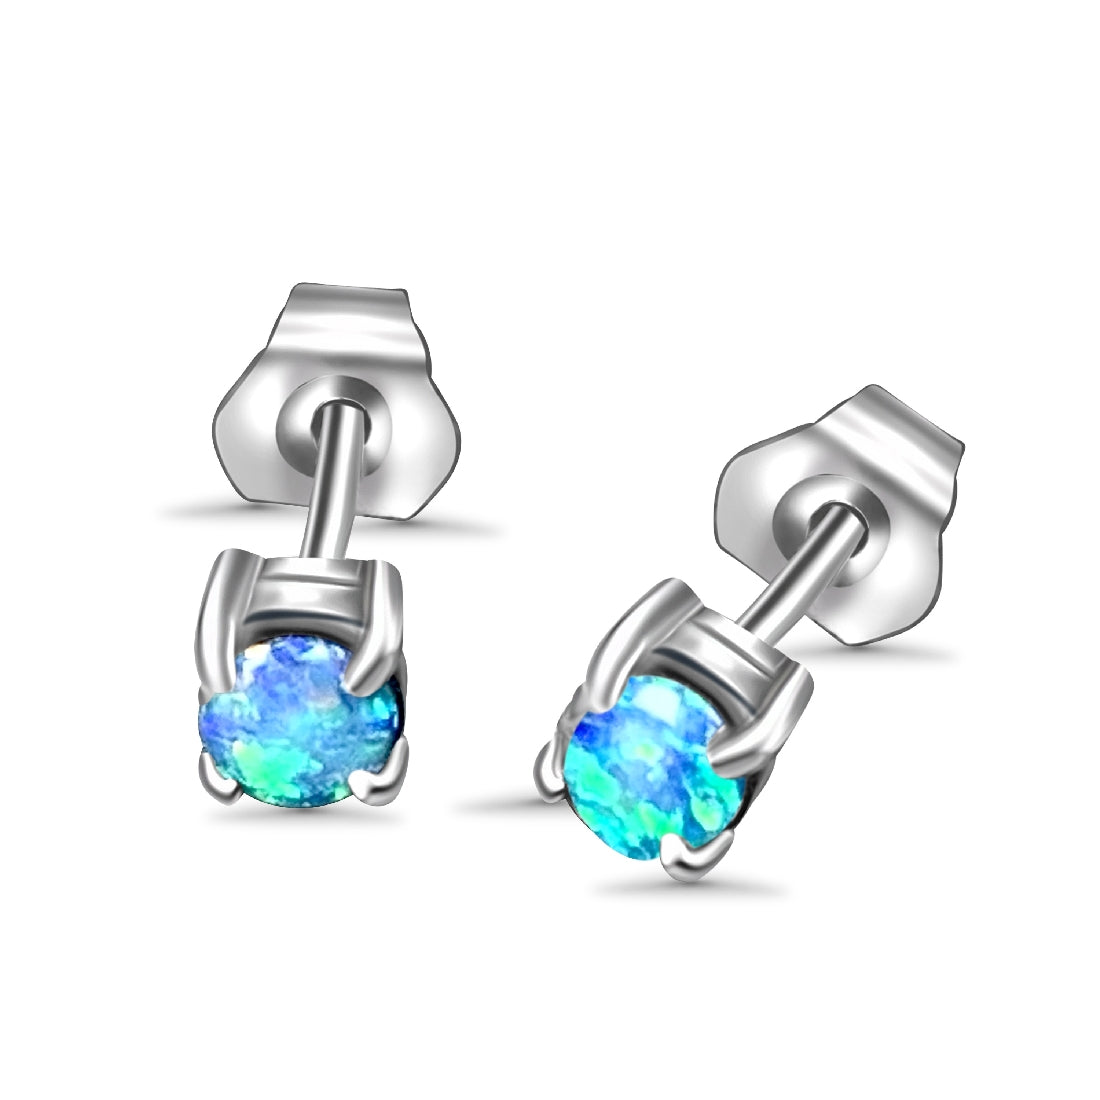 9kt White Gold 3mm earrings studs - Masterpiece Jewellery Opal & Gems Sydney Australia | Online Shop